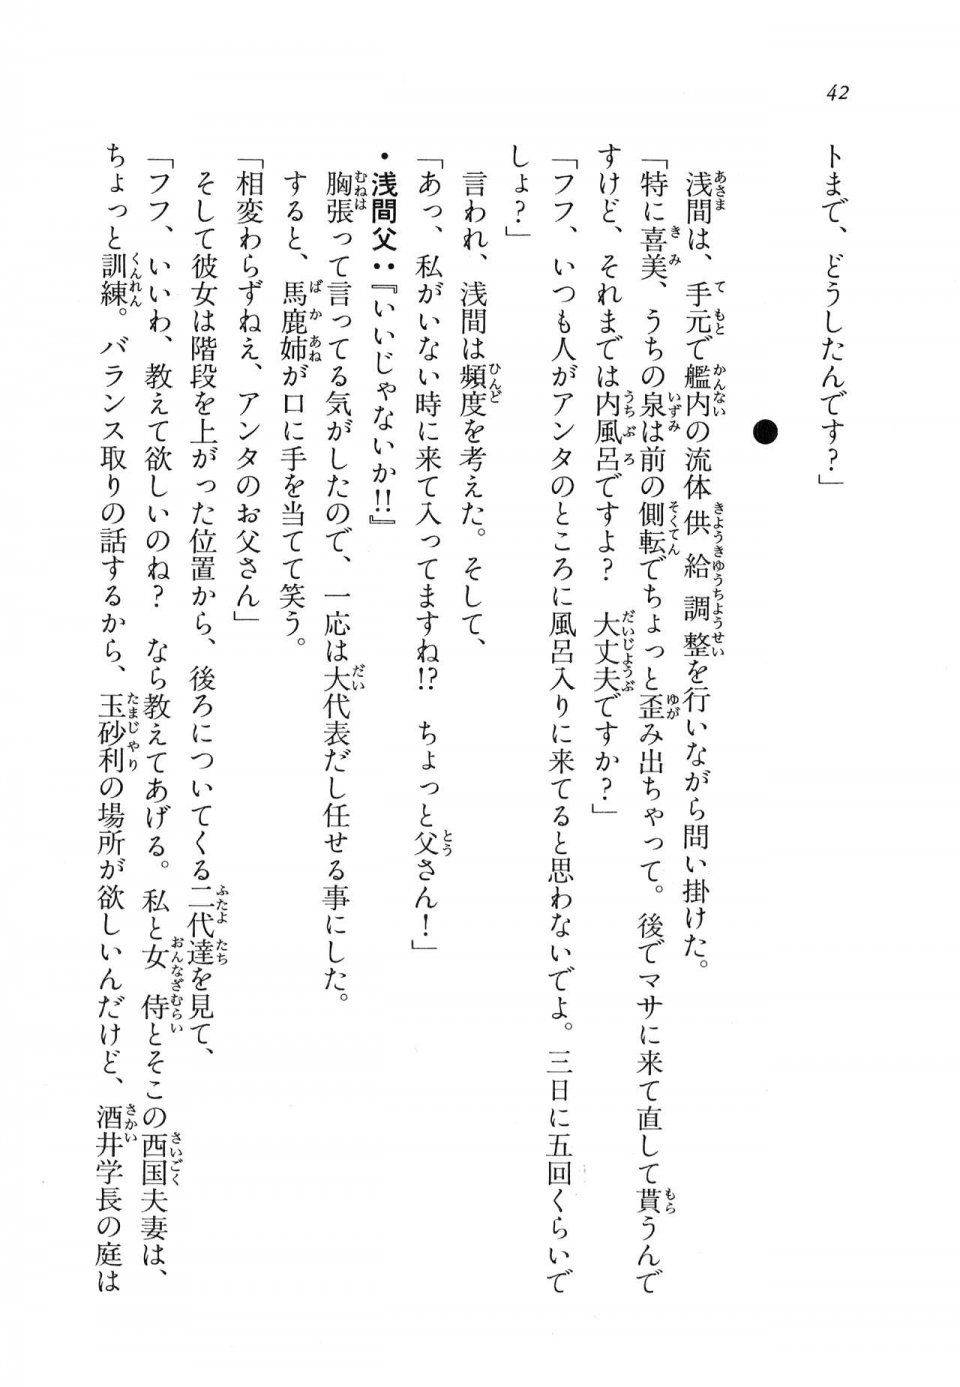 Kyoukai Senjou no Horizon LN Vol 11(5A) - Photo #43